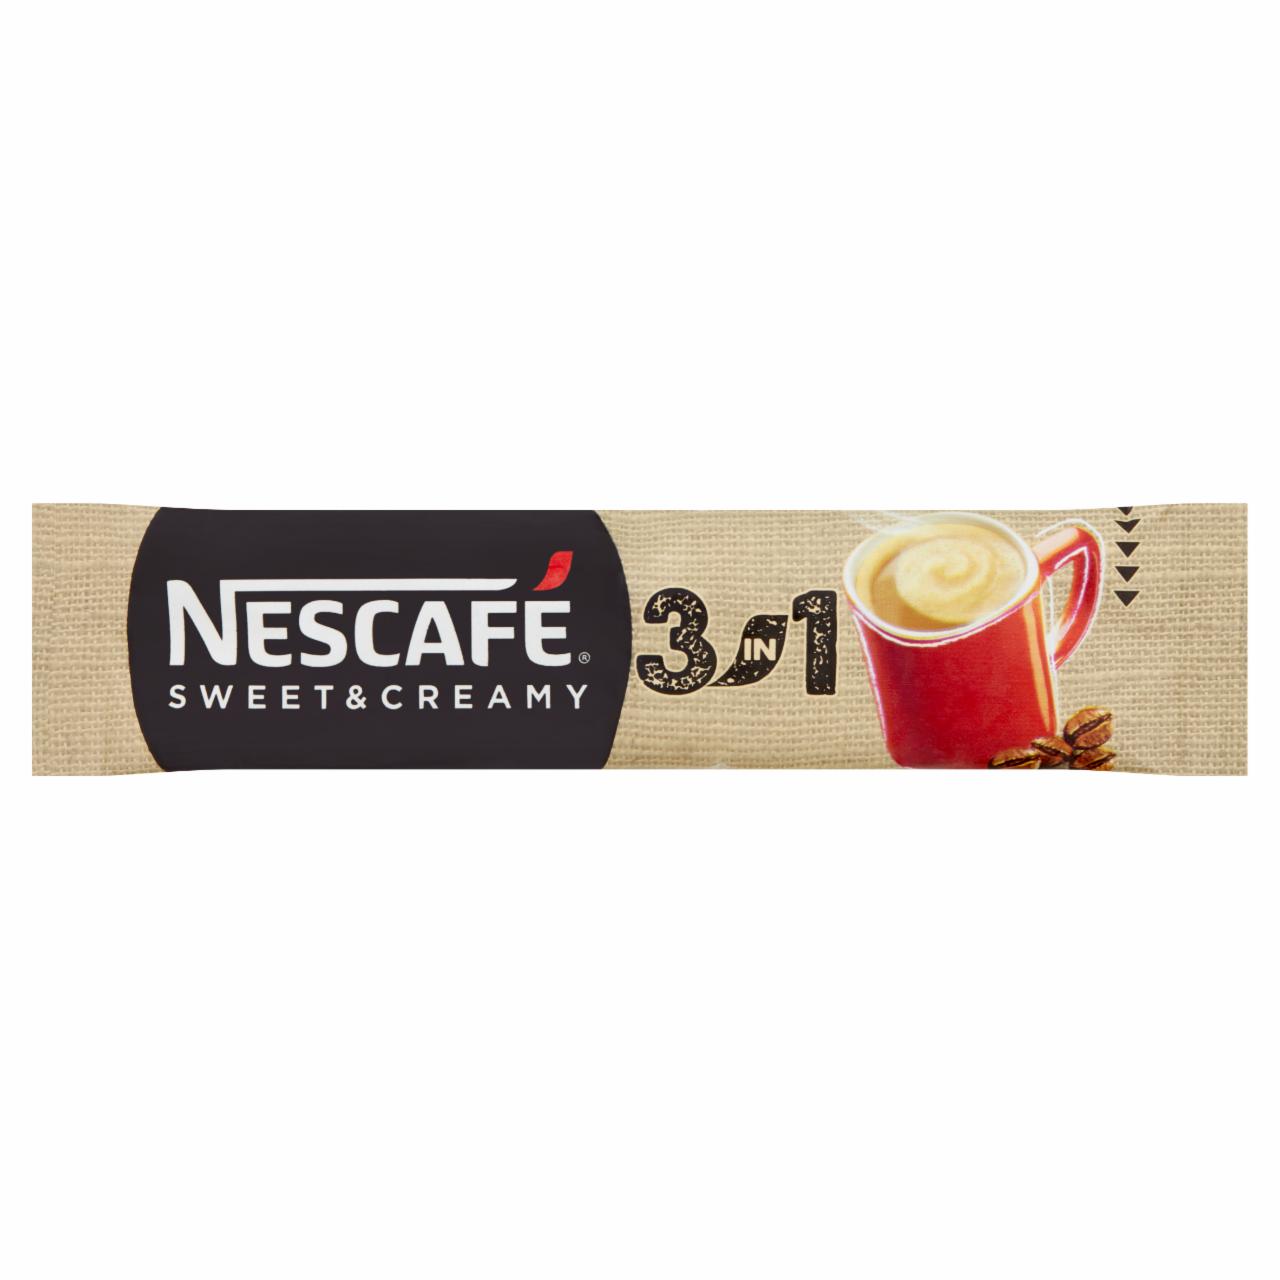 Képek - Nescafé 3in1 Sweet & Creamy azonnal oldódó kávéspecialitás 17 g